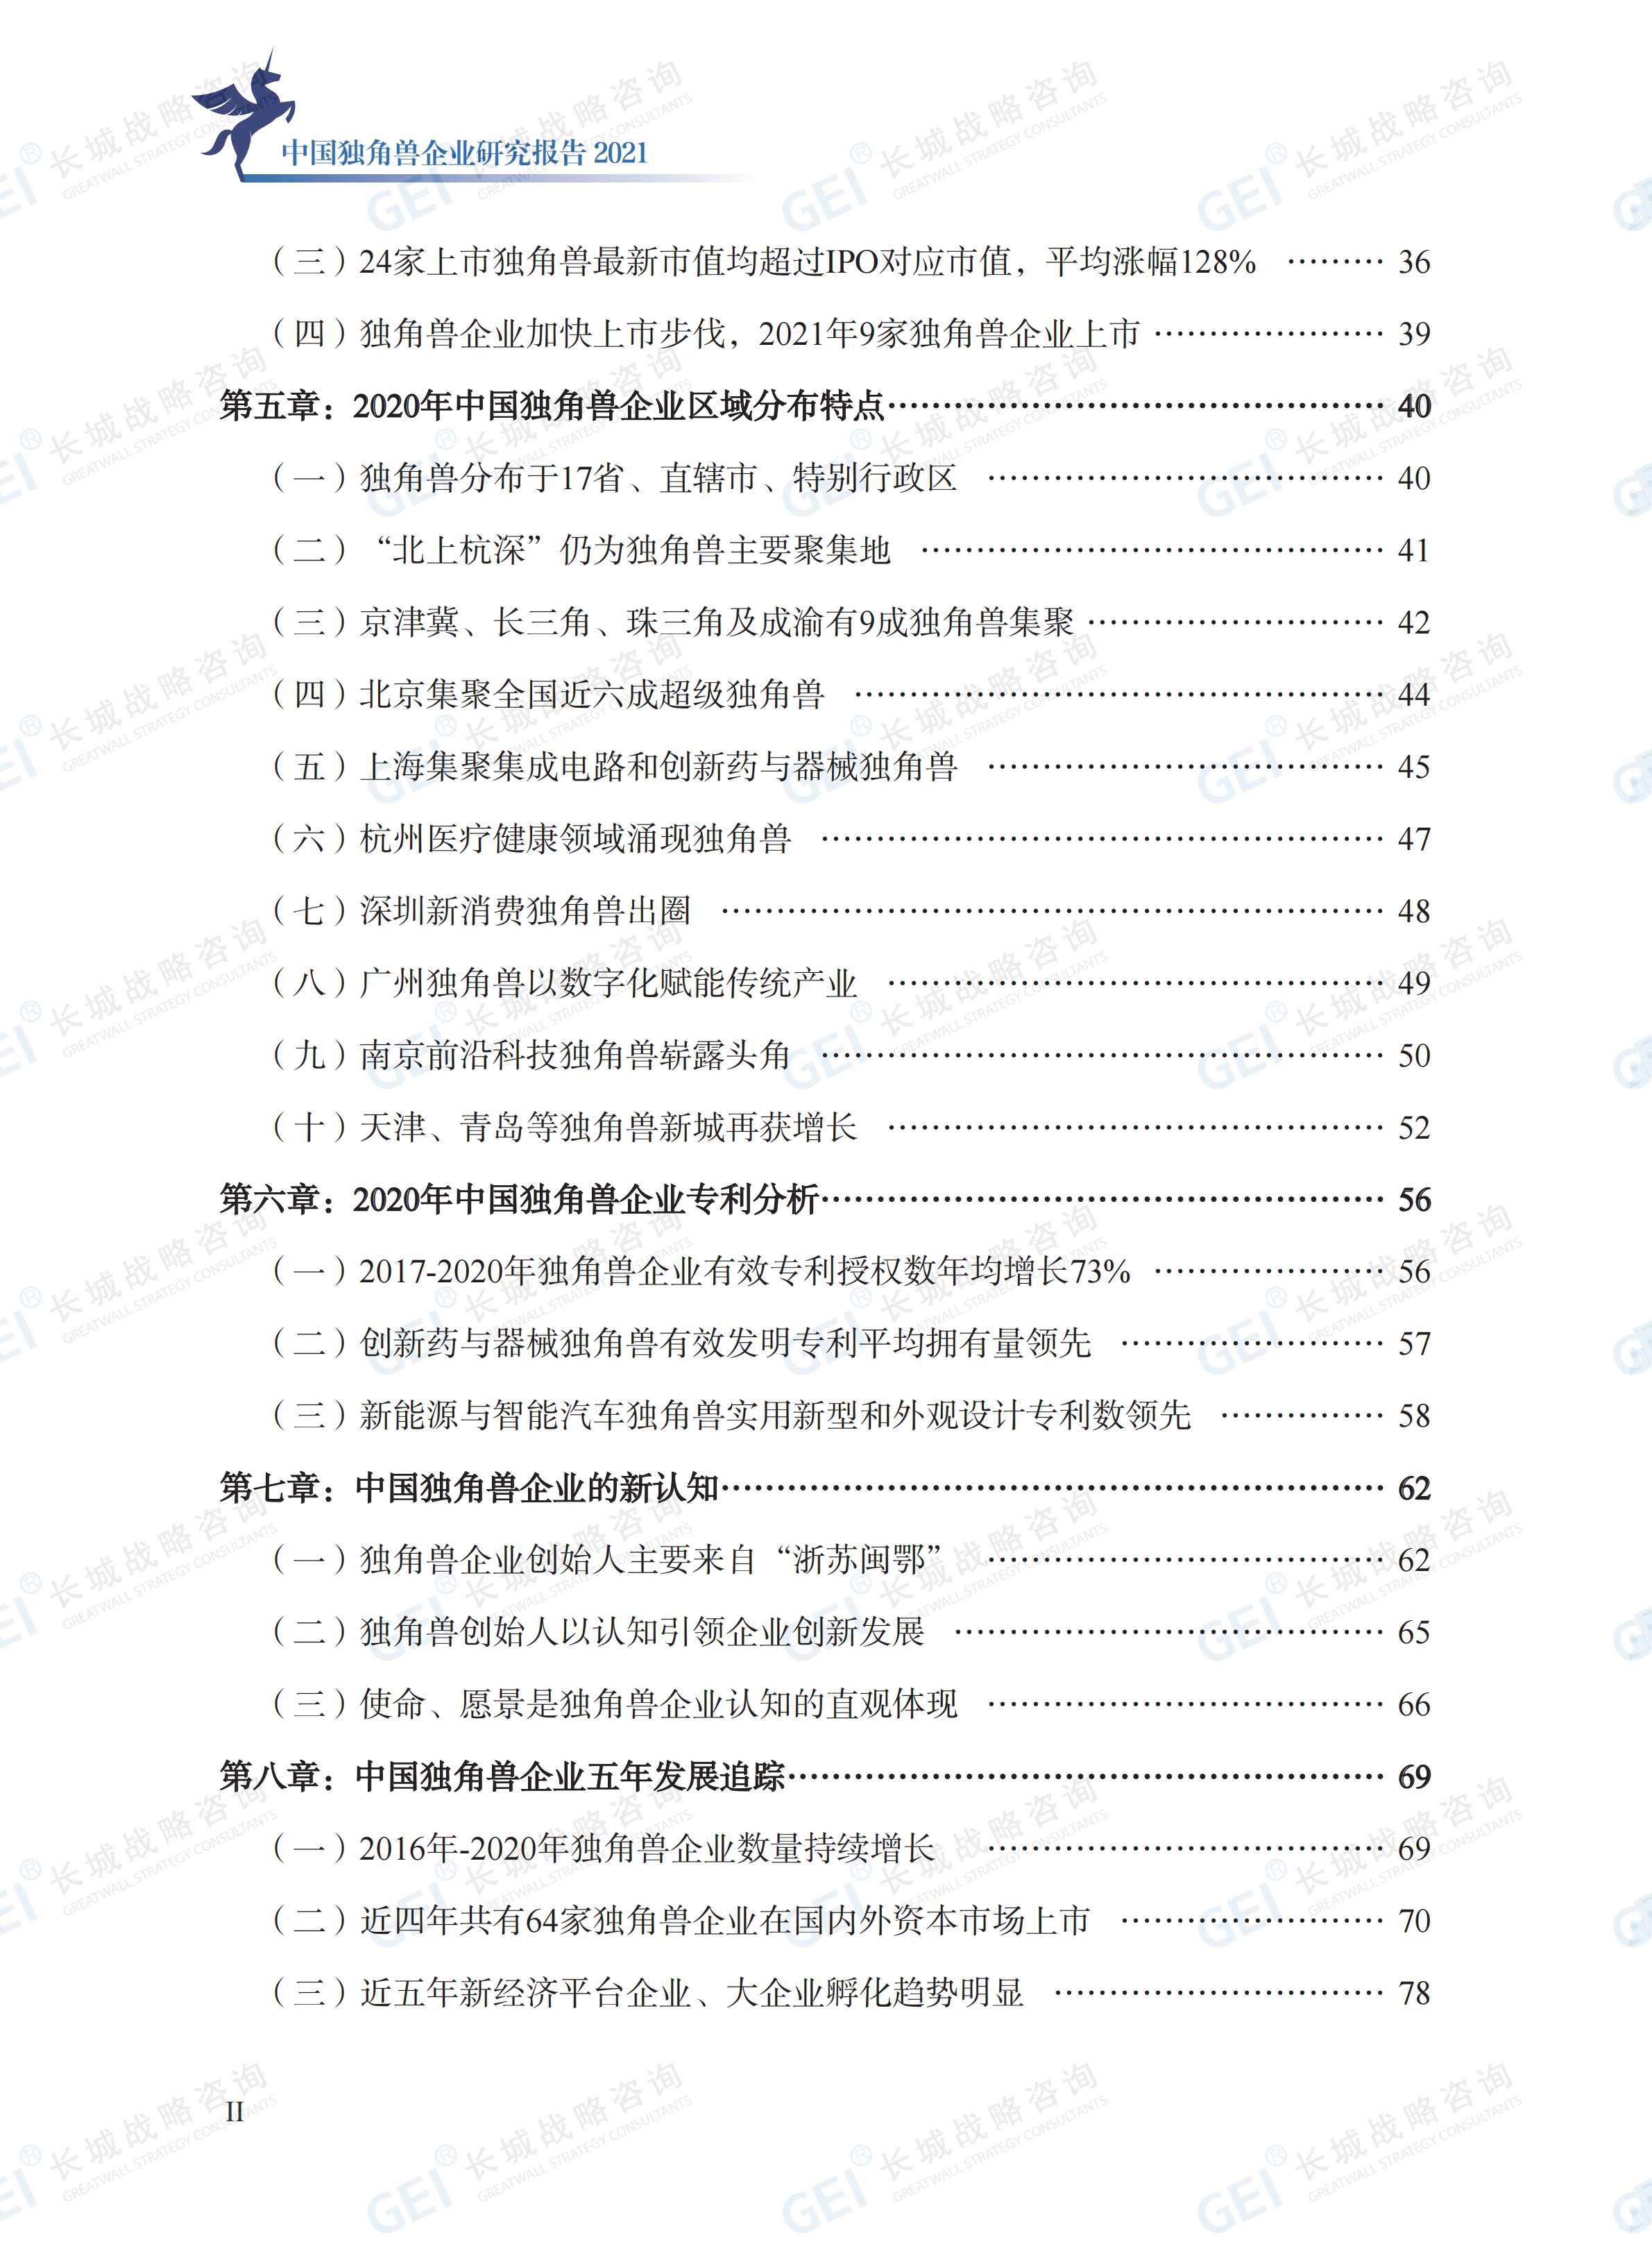 中國獨角獸企業研究報告2021-水印(1)_06.png